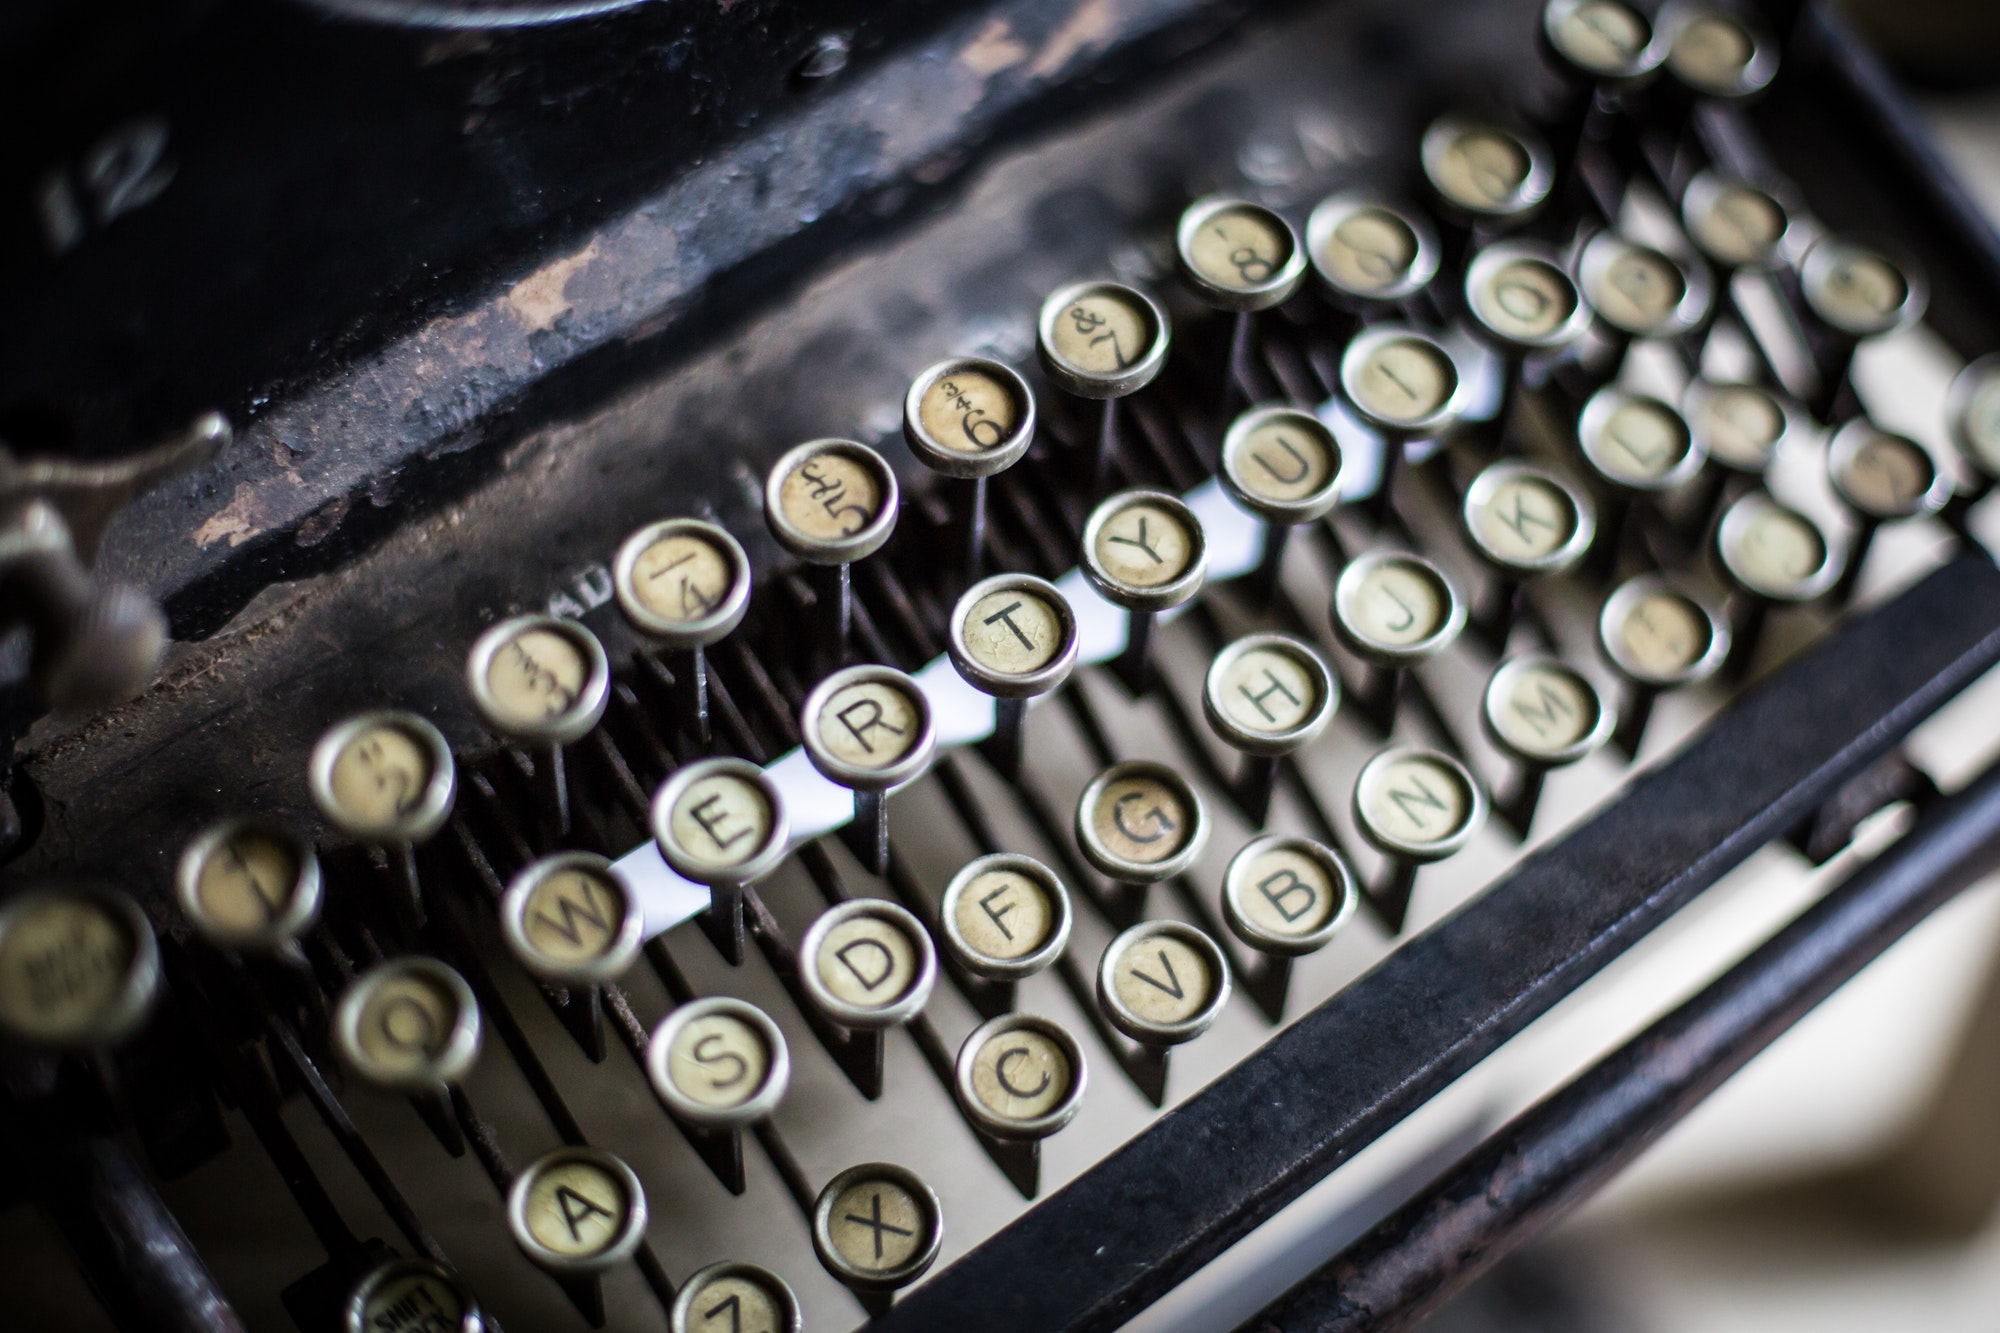 Old Vintage Typewriter